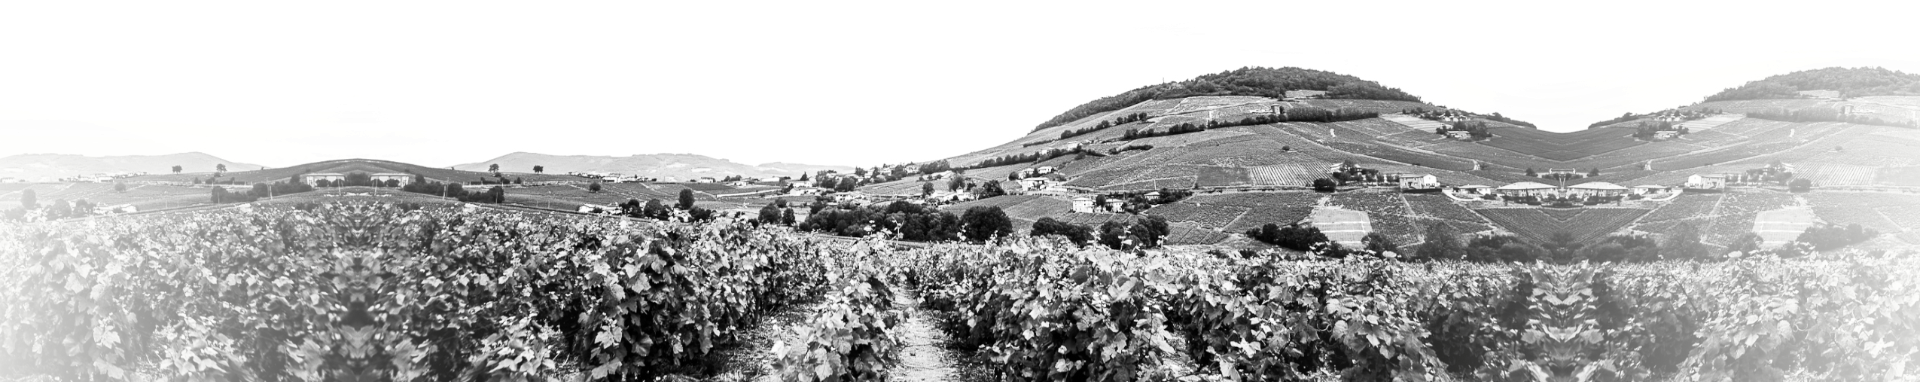 Vins (fiche) : Footer - Mont Brouilly et les vignes du Domaine Nicolas Boudeau